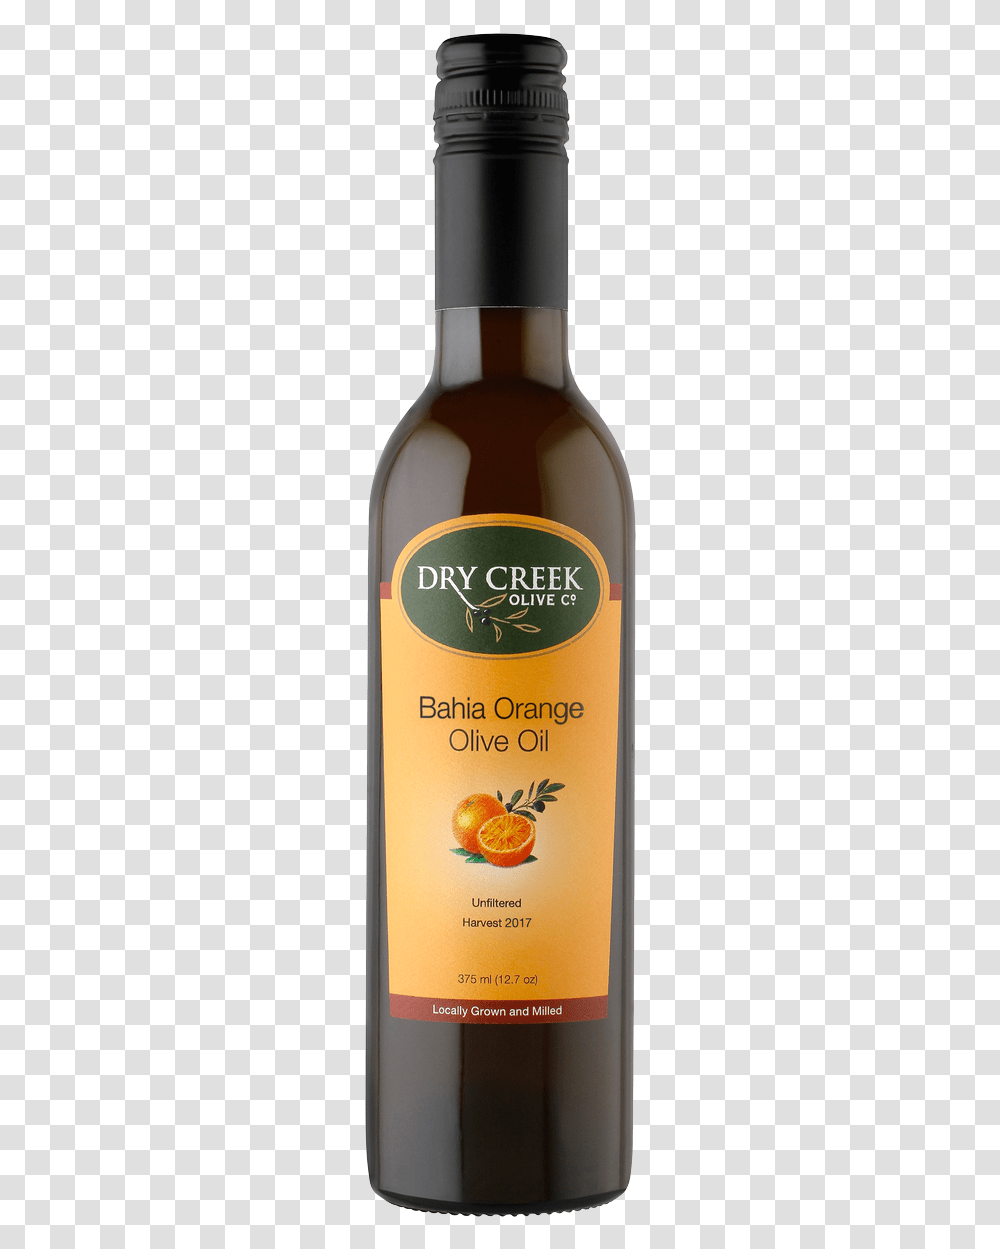 Bahia Orange Olive Oil Glass Bottle, Beverage, Drink, Alcohol, Cosmetics Transparent Png